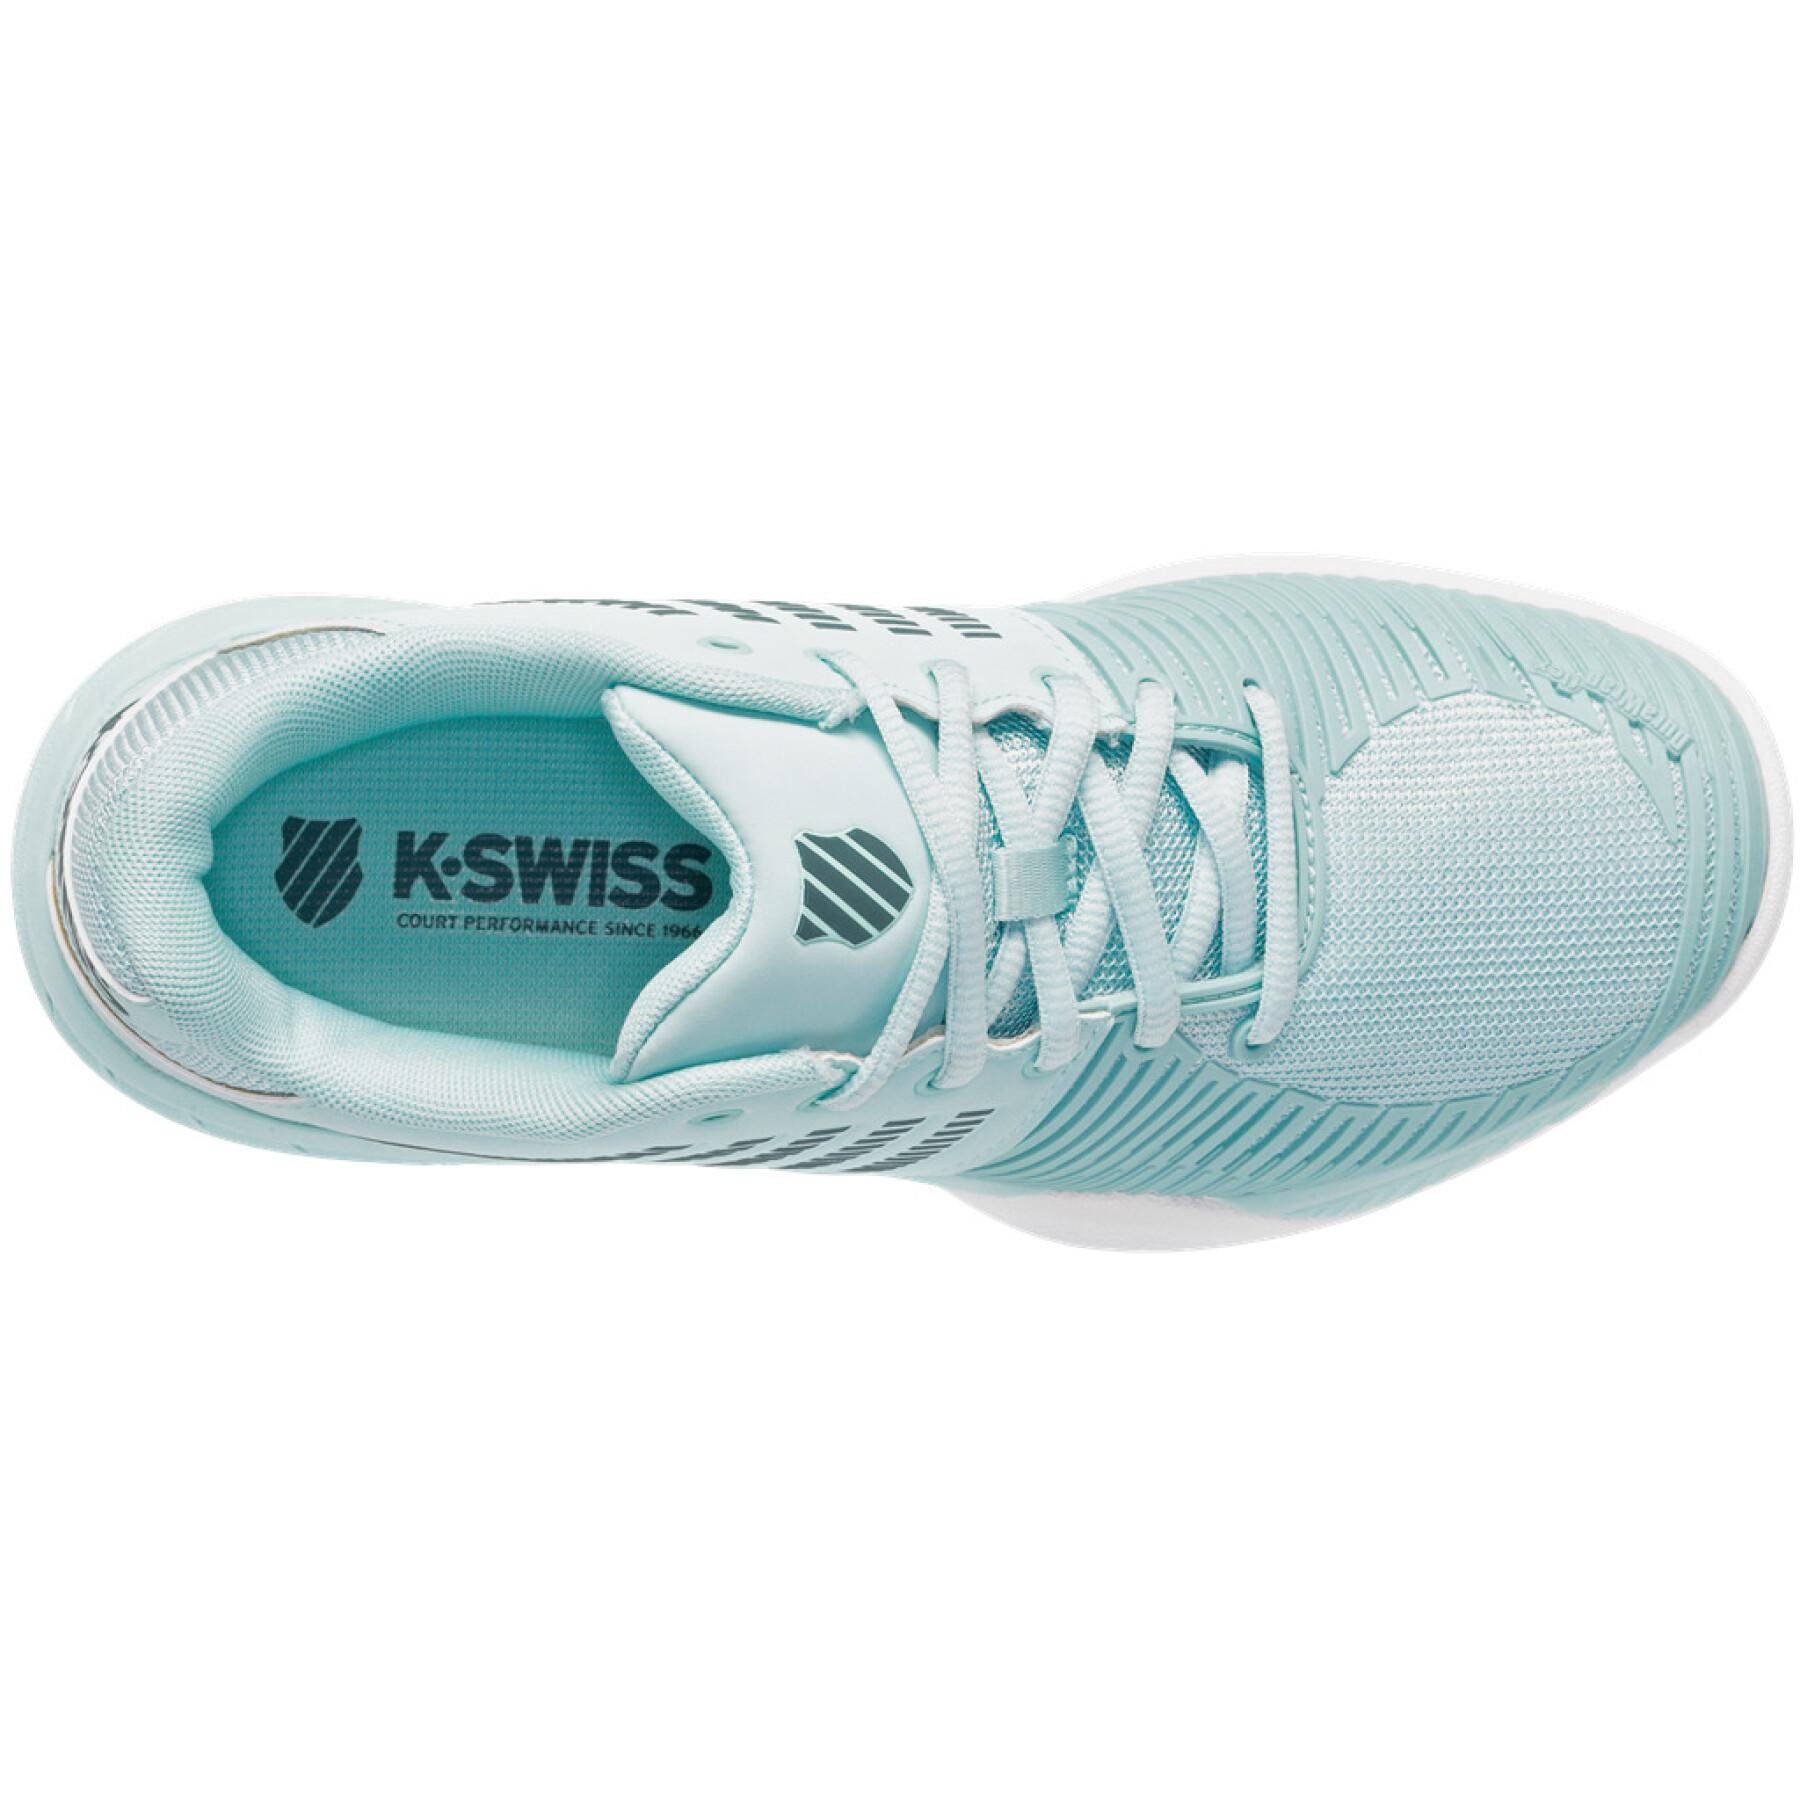 Chaussures de tennis femme K-Swiss Express Light 2 Carpet